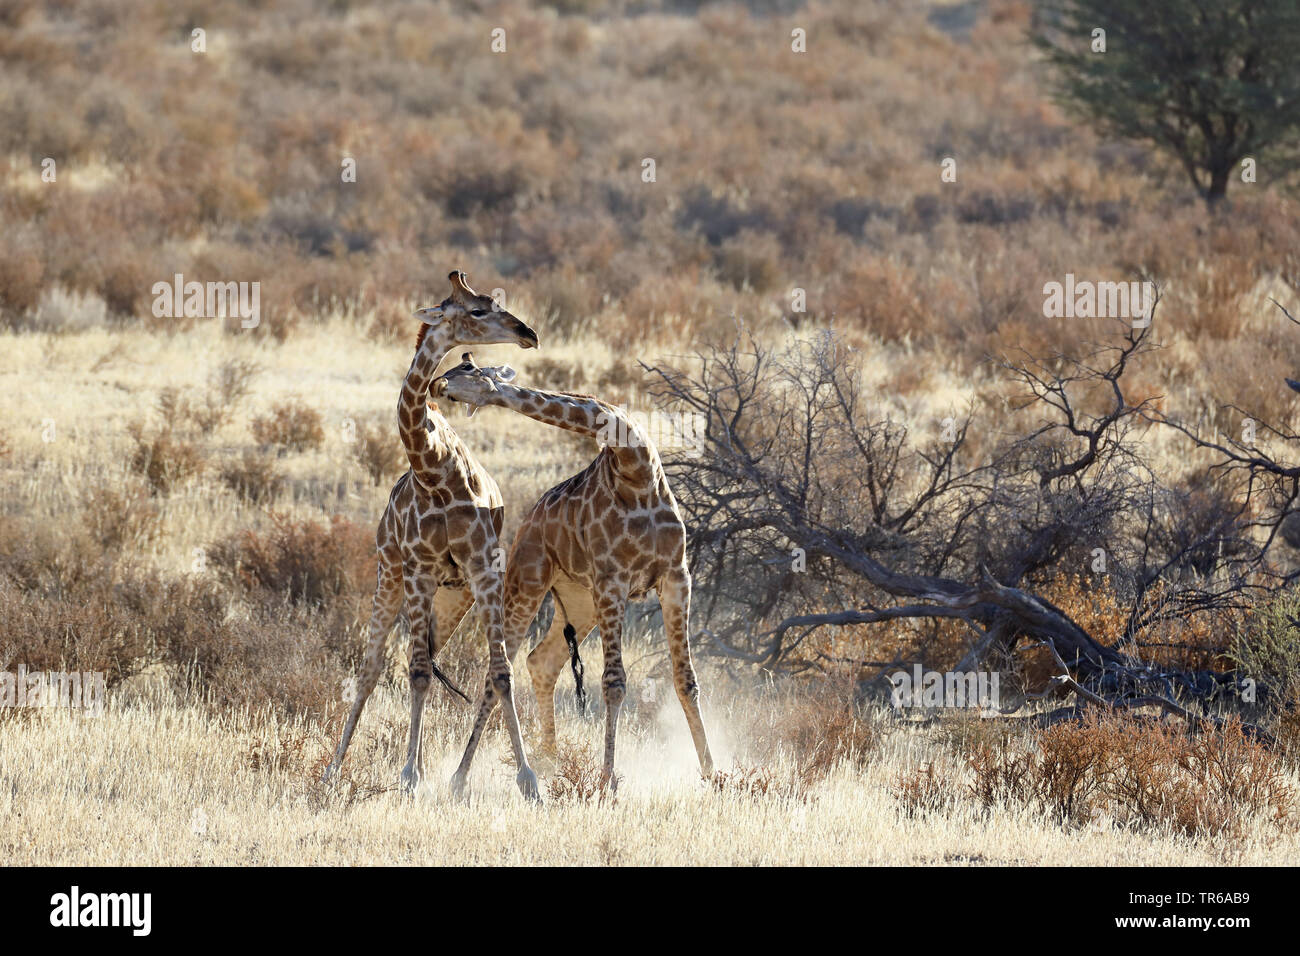 Girafe (Giraffa camelopardalis), territoriaux lutte entre deux hommes girafes dans la savane, Afrique du Sud, Kgalagadi Transfrontier National Park Banque D'Images